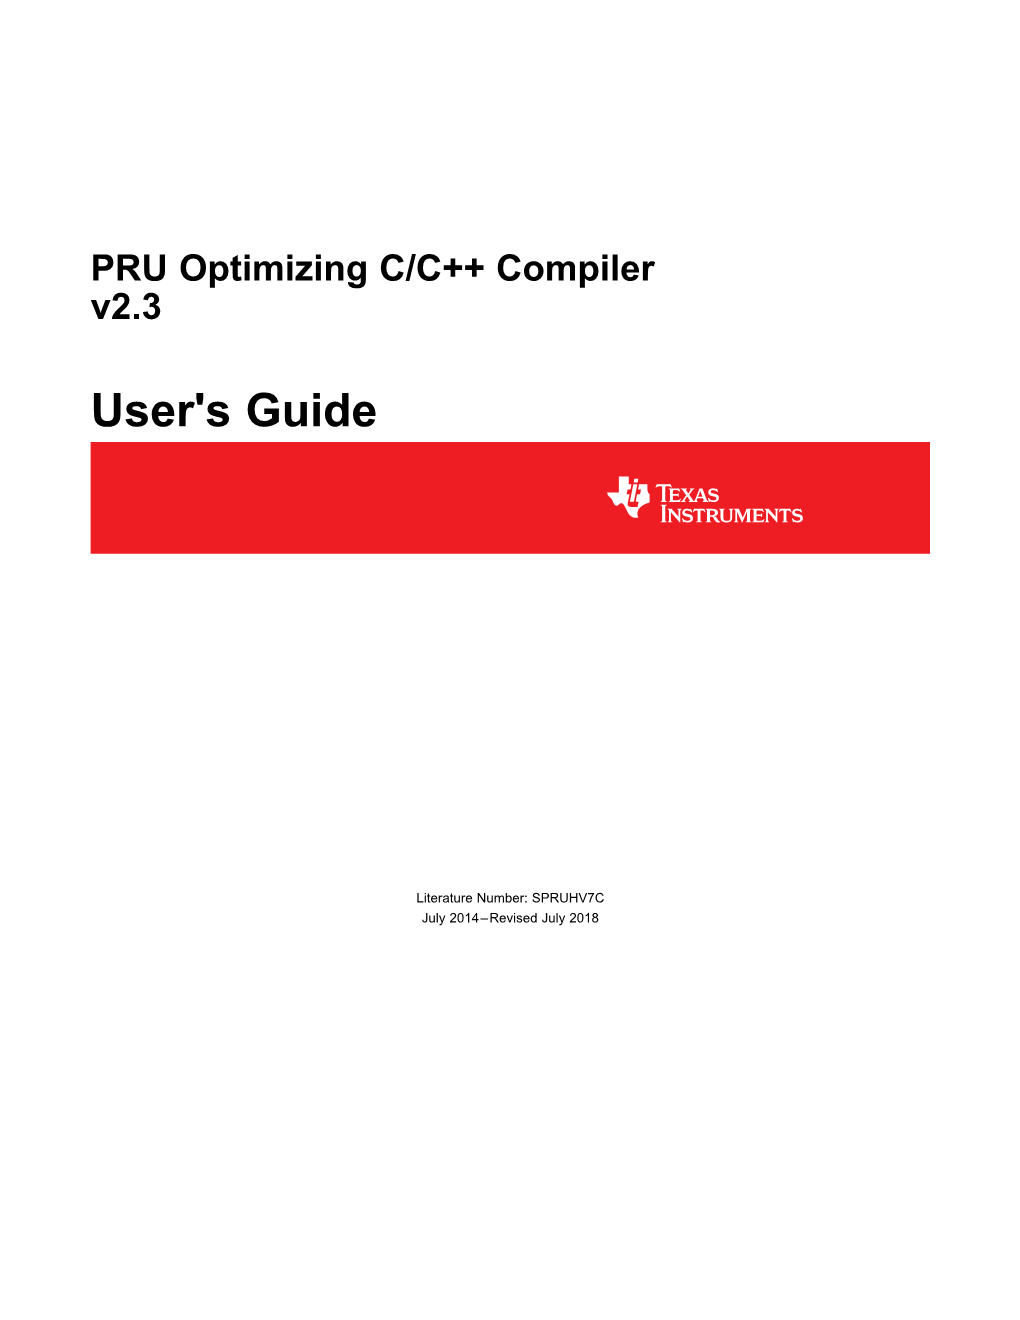 PRU Optimizing C/C++ Compiler User's Guide